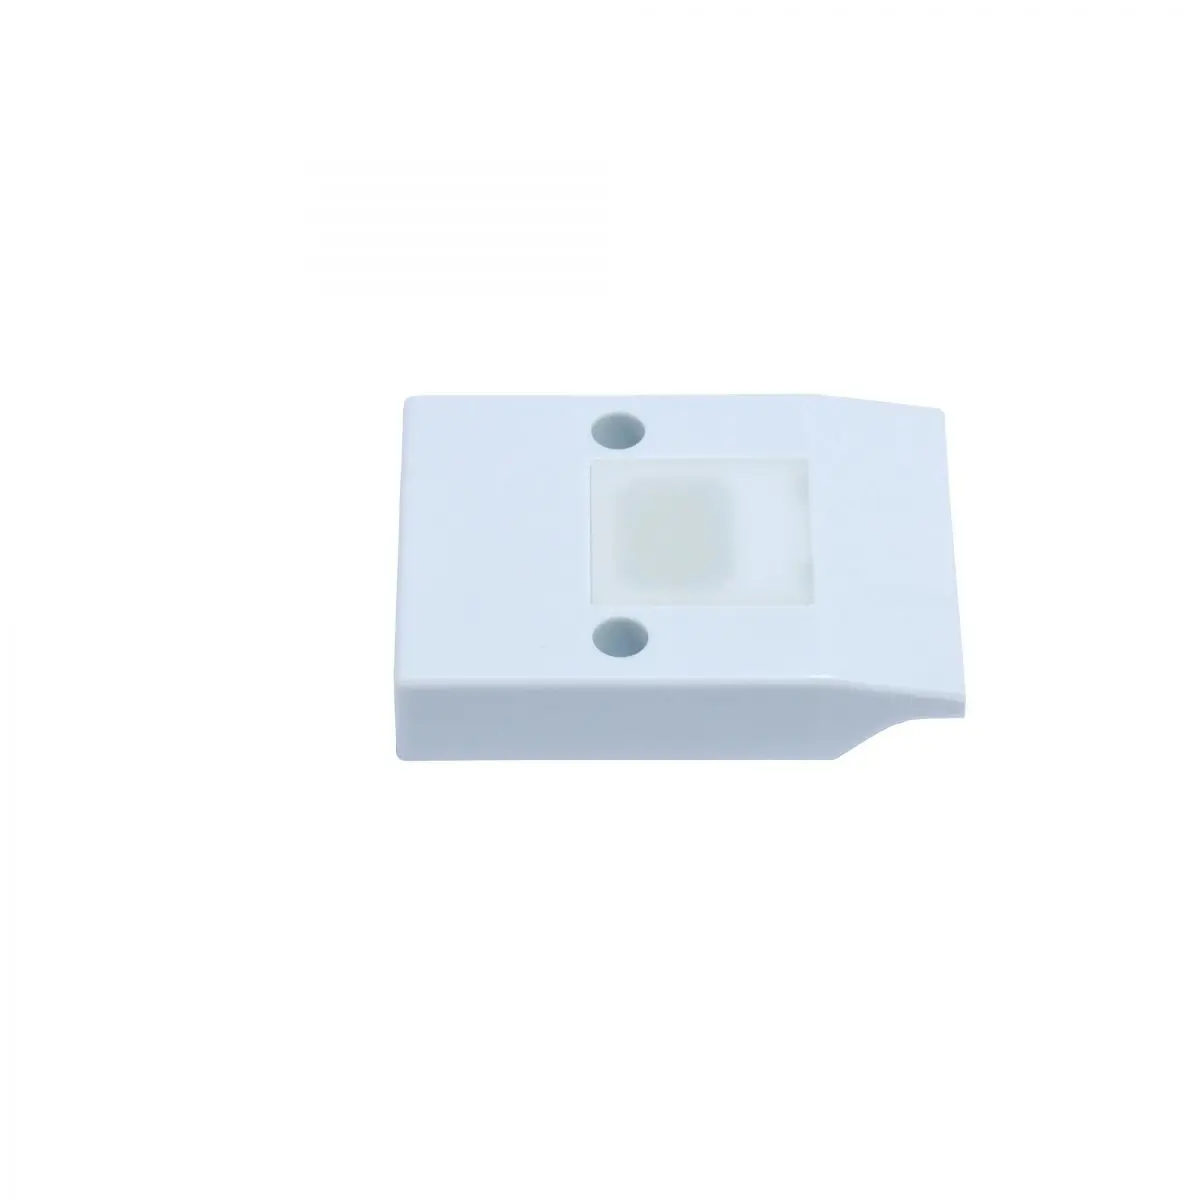 Komplett világítás, fehér, Dometic hűtőszekrényekhez RML 933X, RMV 5305